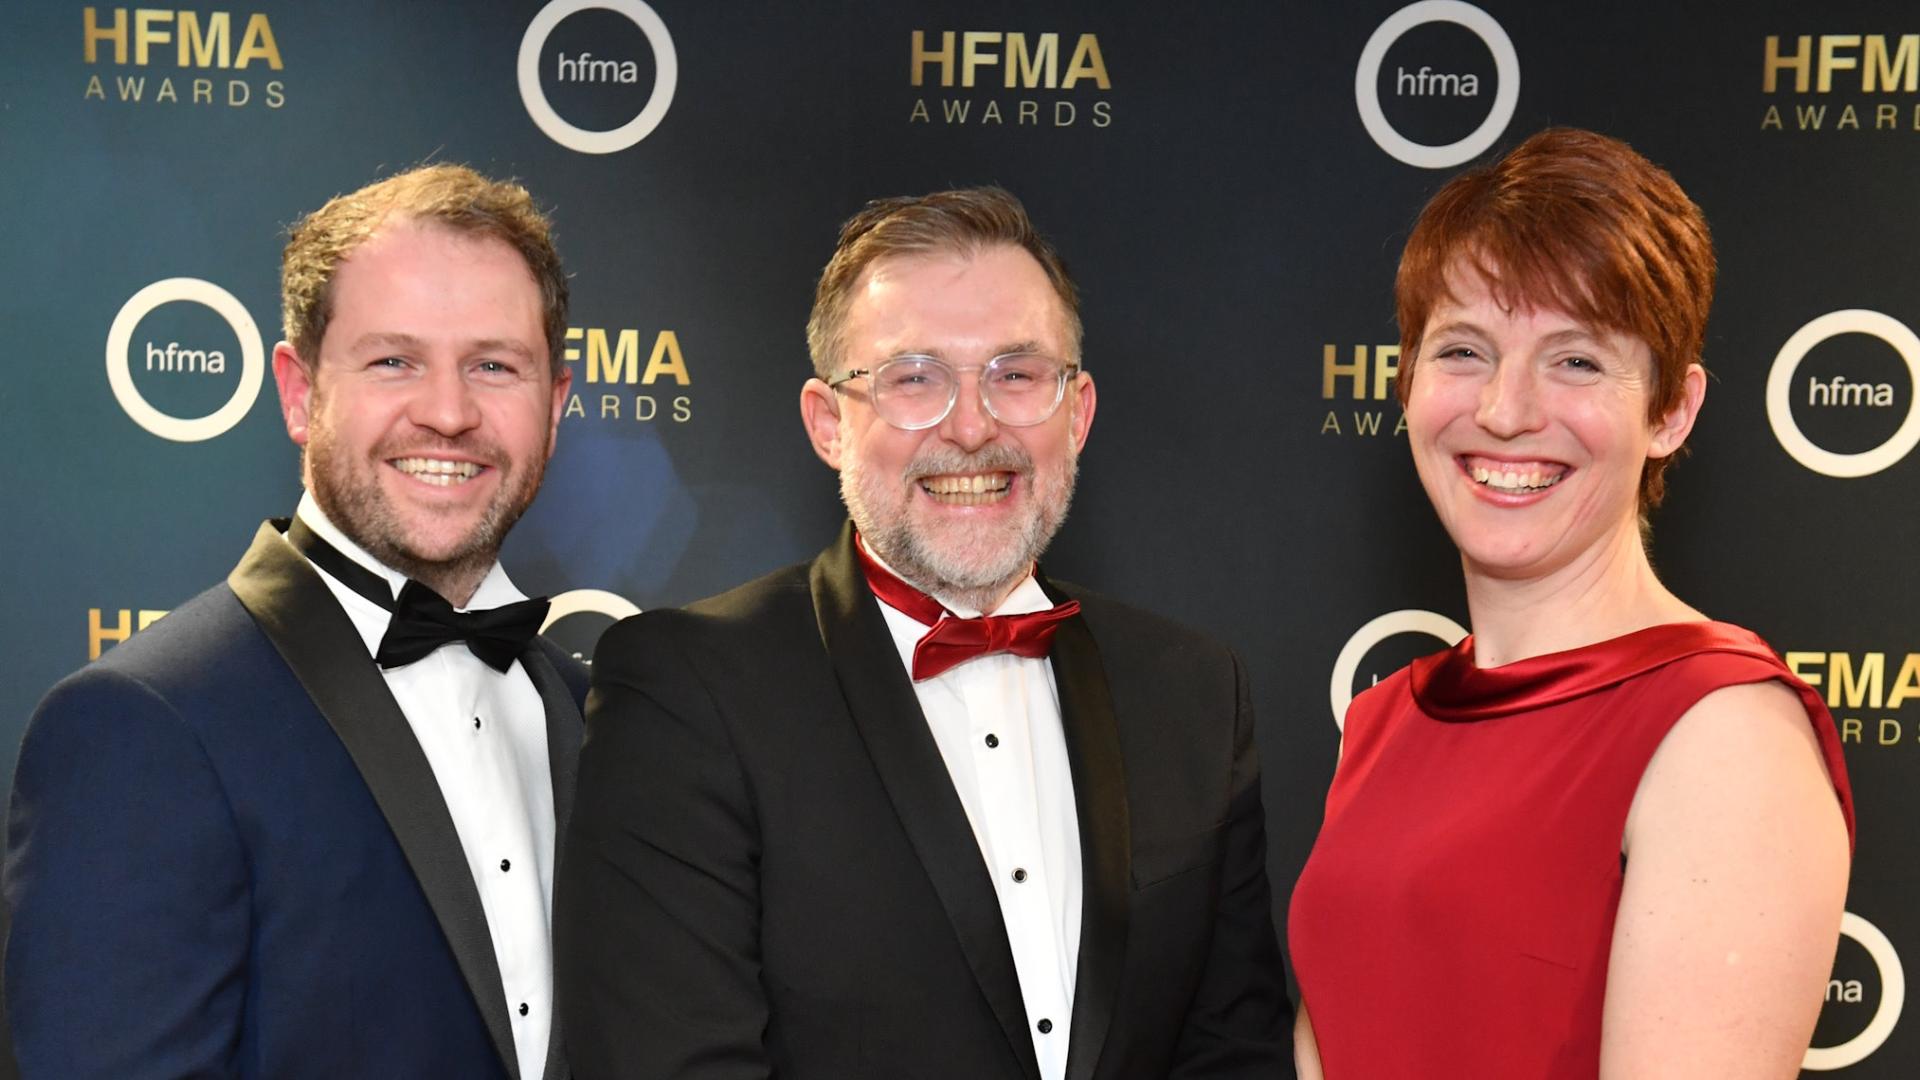 HFMA Awards 2022 winners